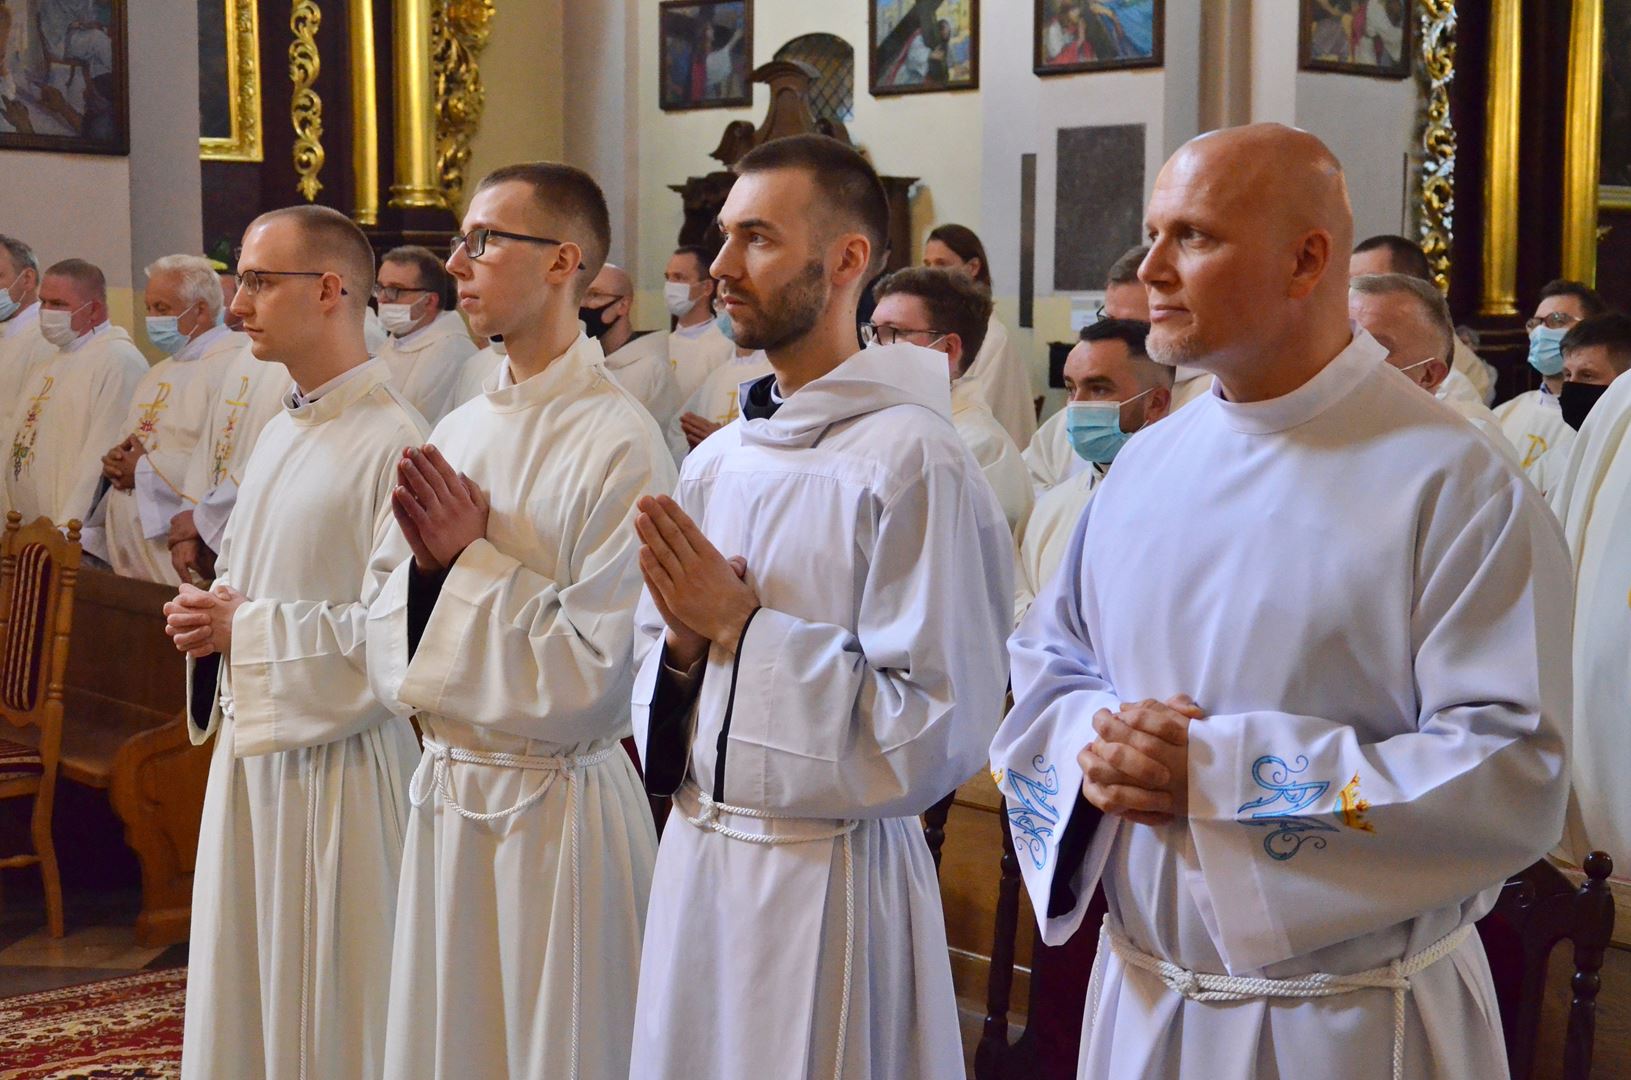 Vigningens sakrament för diakoner och präster hos Gråbröderna den 29 maj 2021, i Lódź, Polen. Foto: Gråbröderna